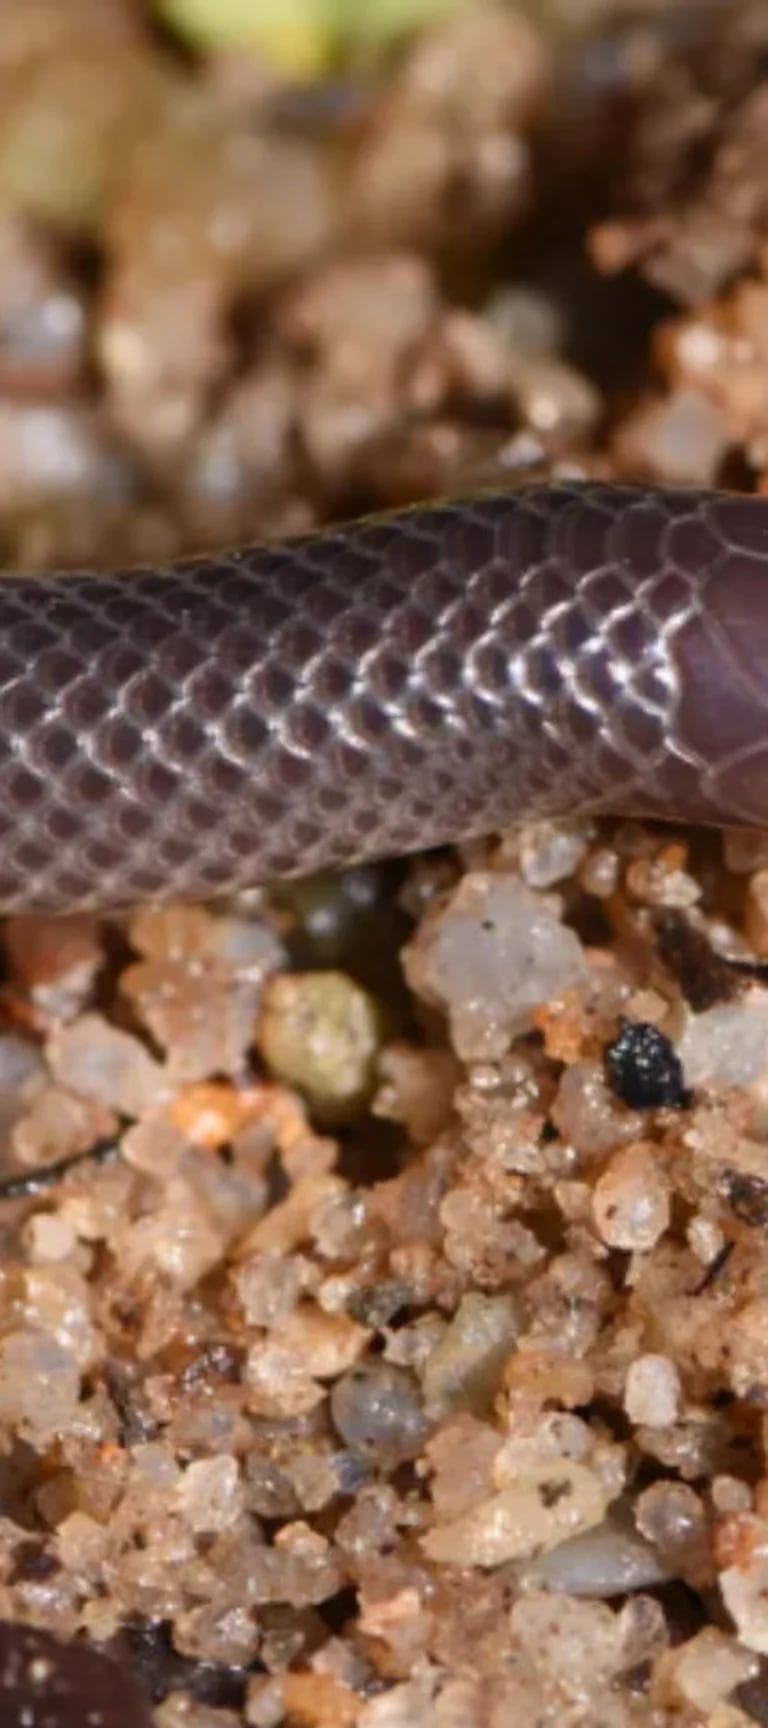 Trasplante Ineficiente Aparentemente La peligrosa especie de serpiente descubierta en Nueva Guinea capaz de  pudrir la piel - Infobae